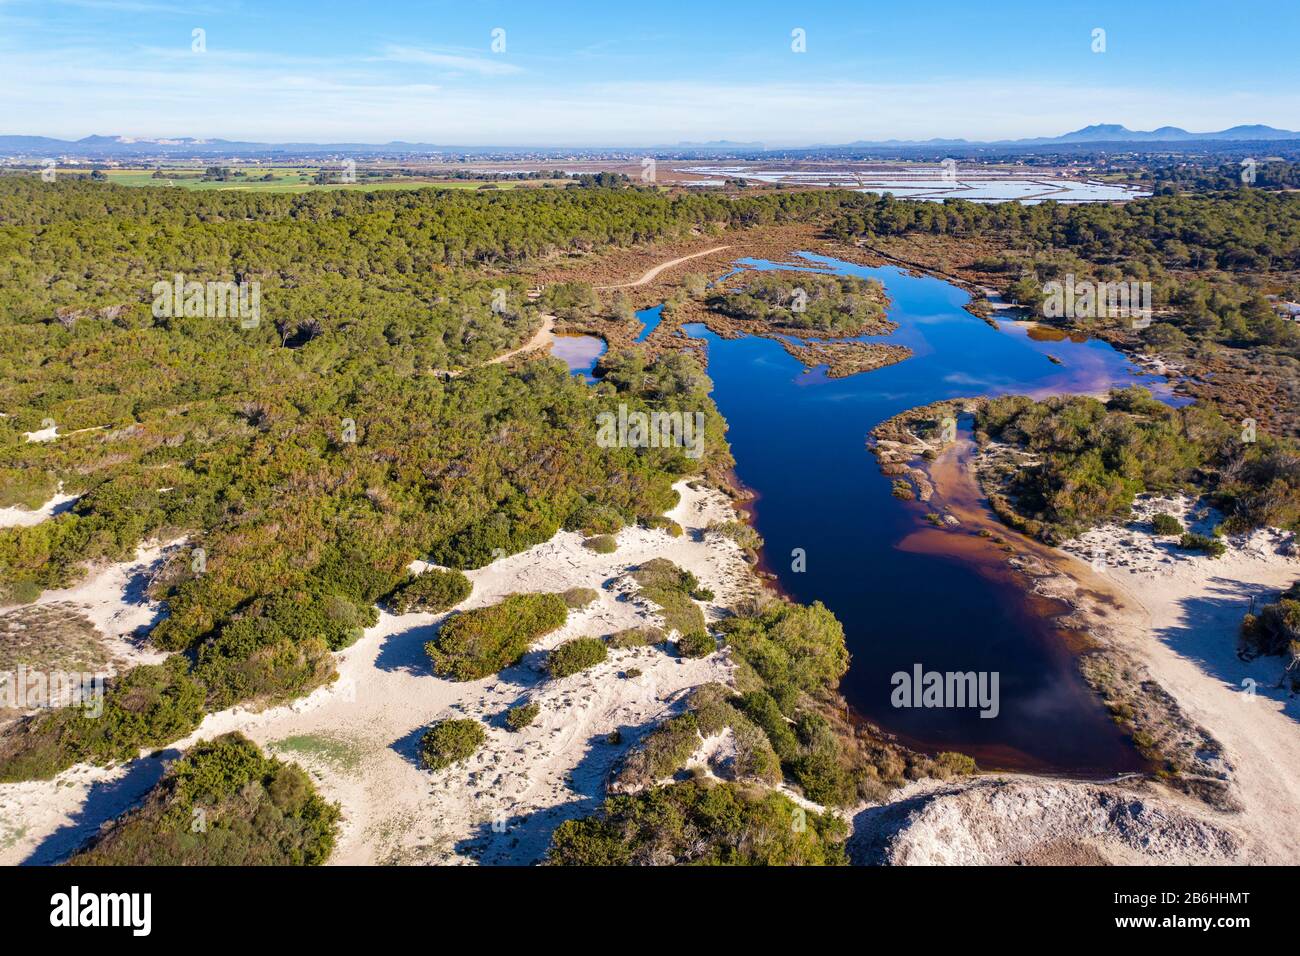 Lagon d'eau saumâtre, parc naturel es Trenc-Salobrar de Campos, près de Sant Jordi, vue aérienne, Majorque, Iles Baléares, Espagne Banque D'Images